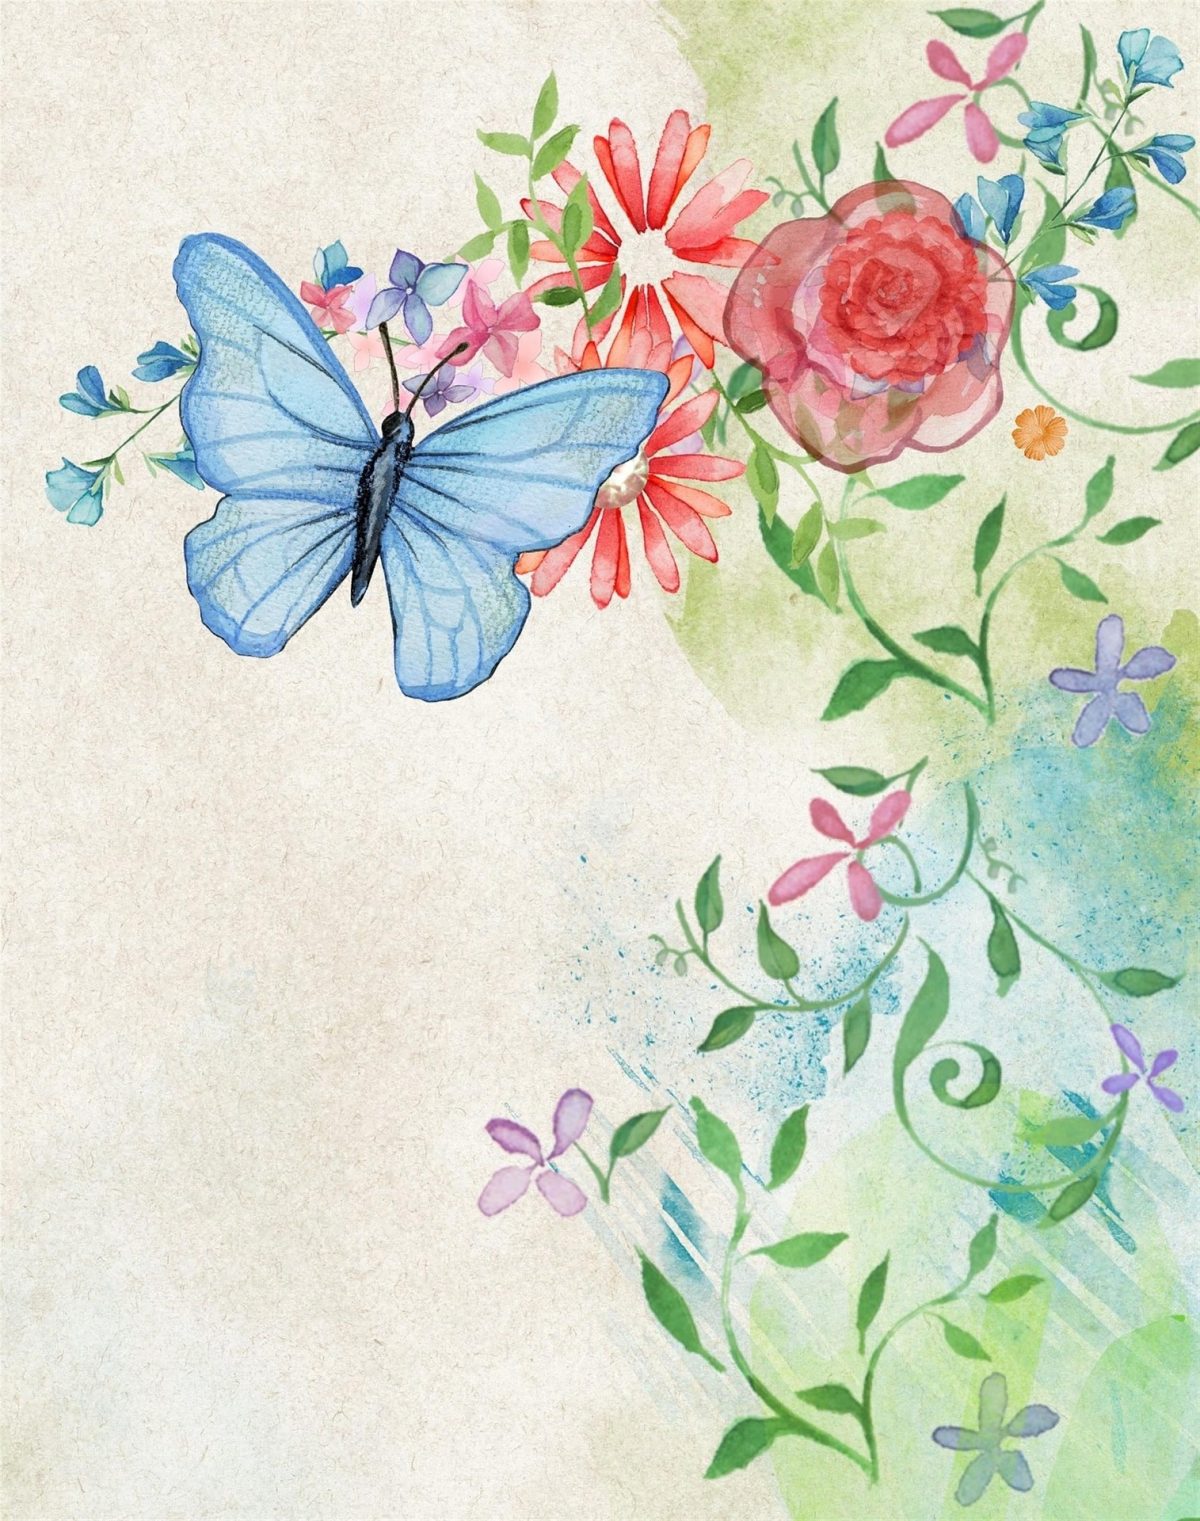 “Su ali di farfalla”: lo schema del romanzo